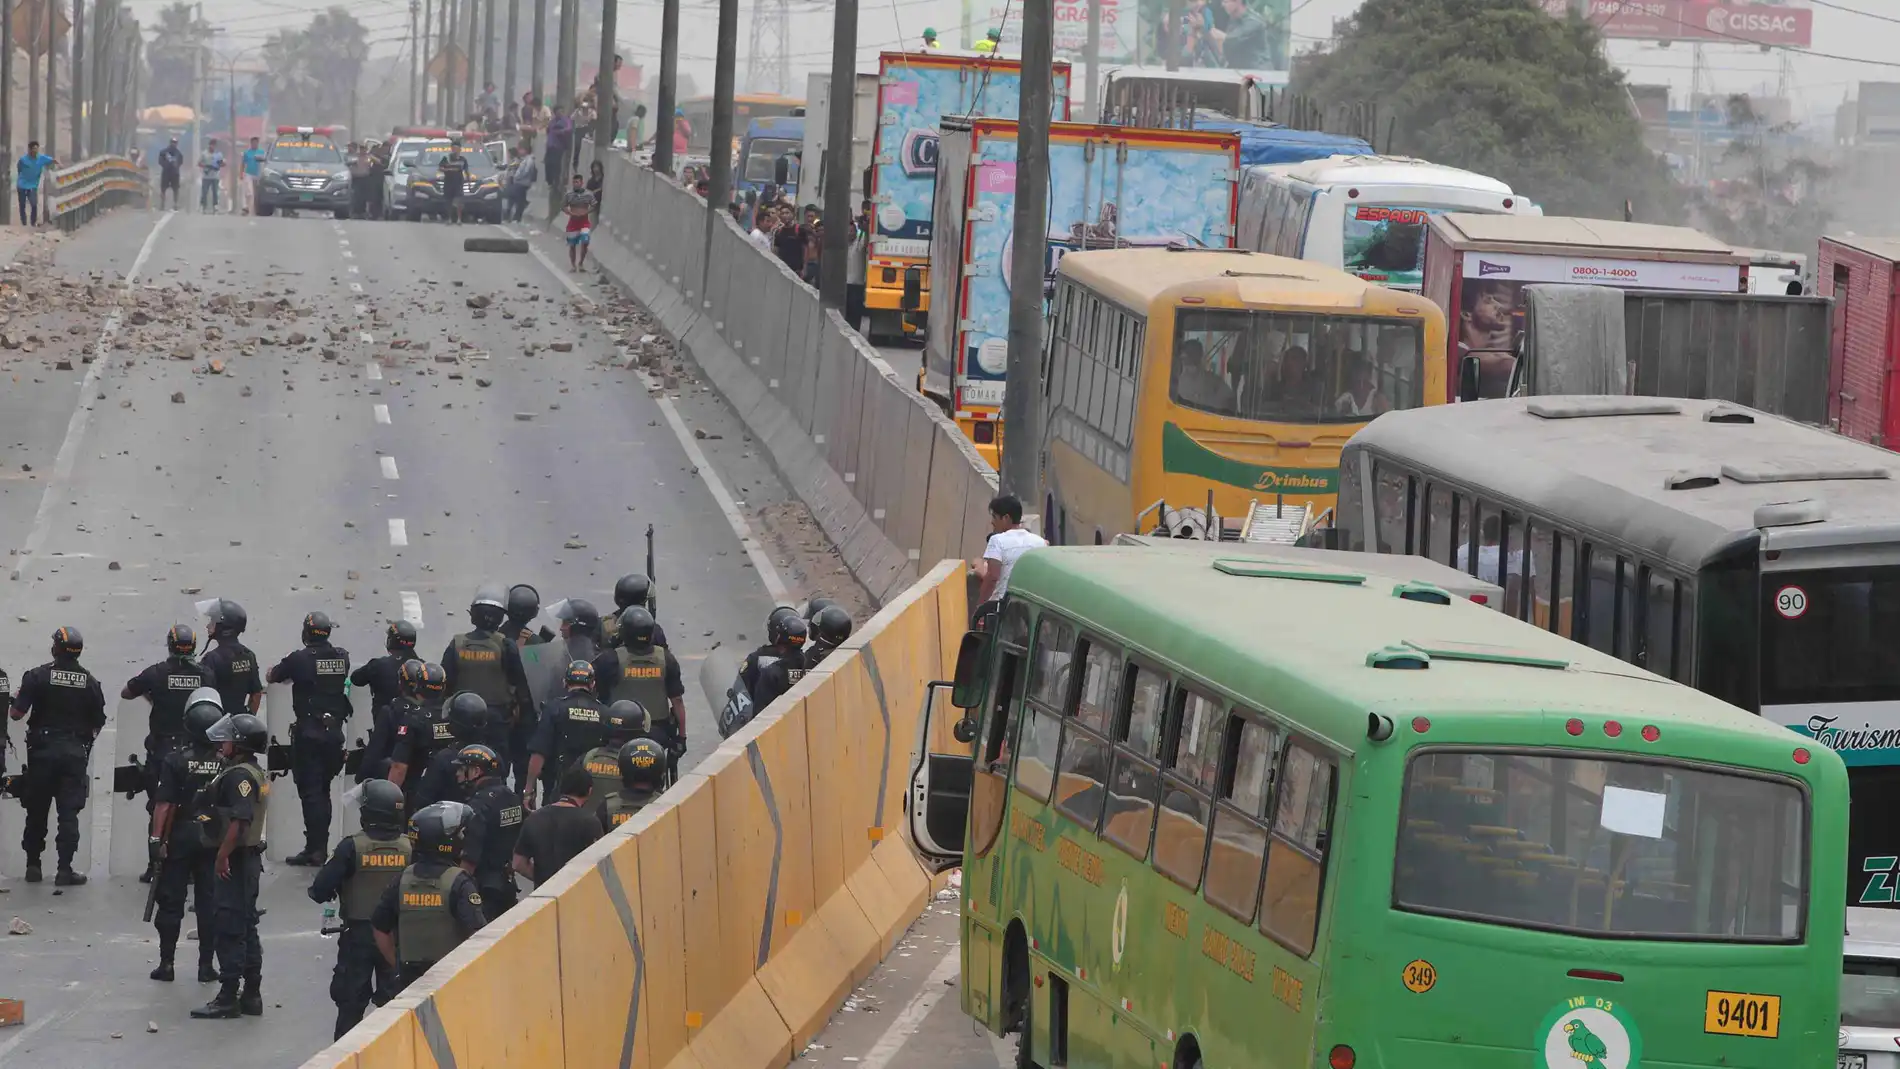 Cientos de vecinos y transportistas bloquearon hoy de forma violenta un tramo de la carretera Panamericana Norte de Lima y destruyeron las garitas de control en protesta por el alza de peajes en esa zona de la capital peruana